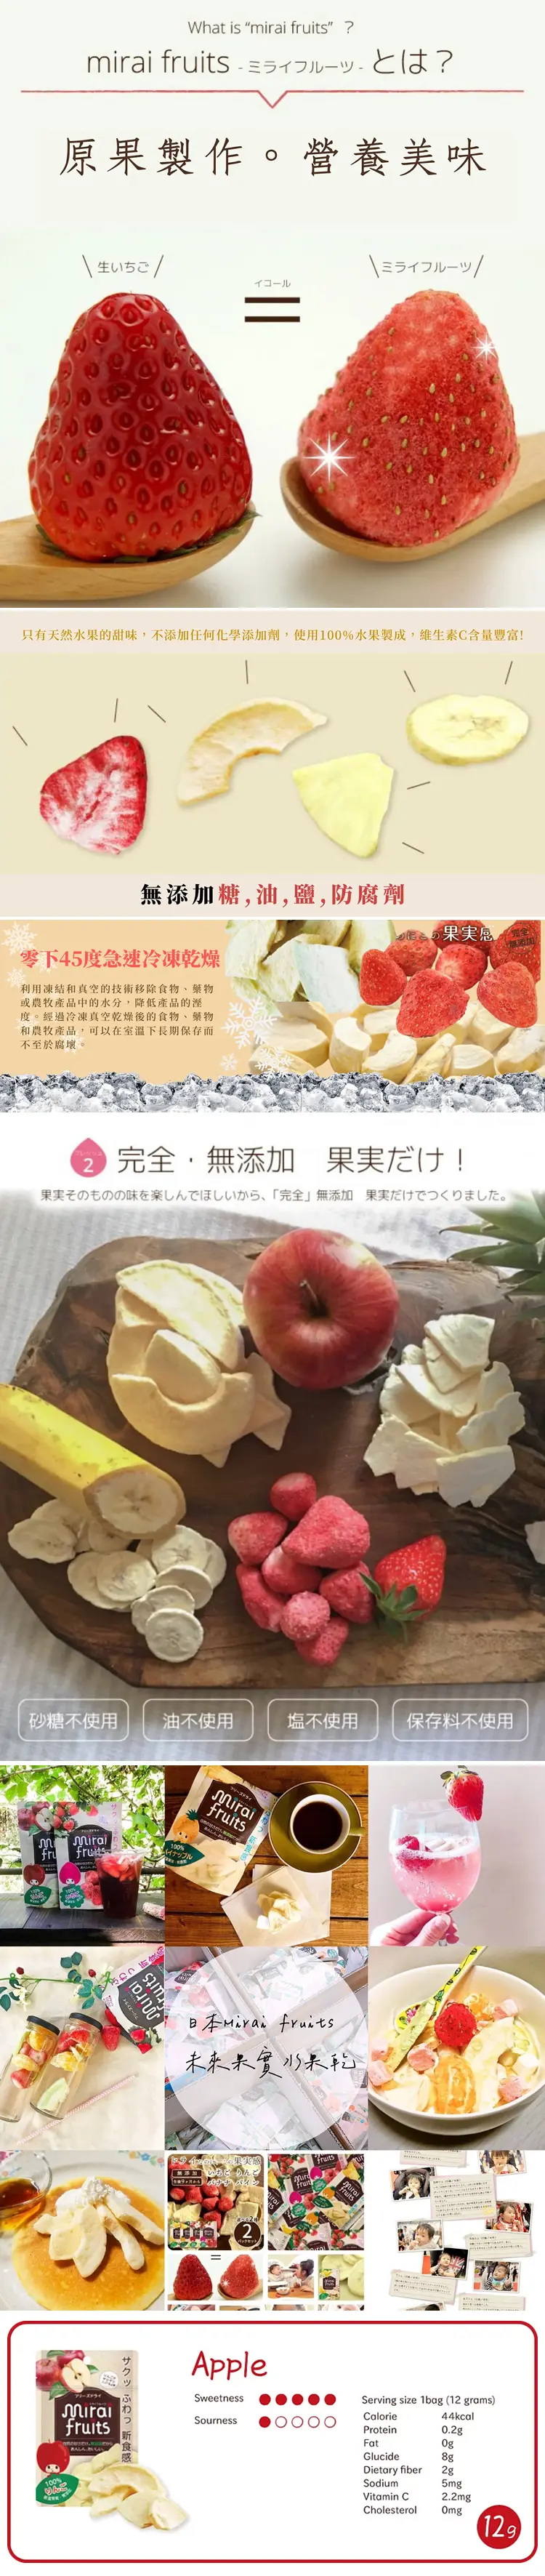 mirai fruits 未来果实水果乾;苹果 12g